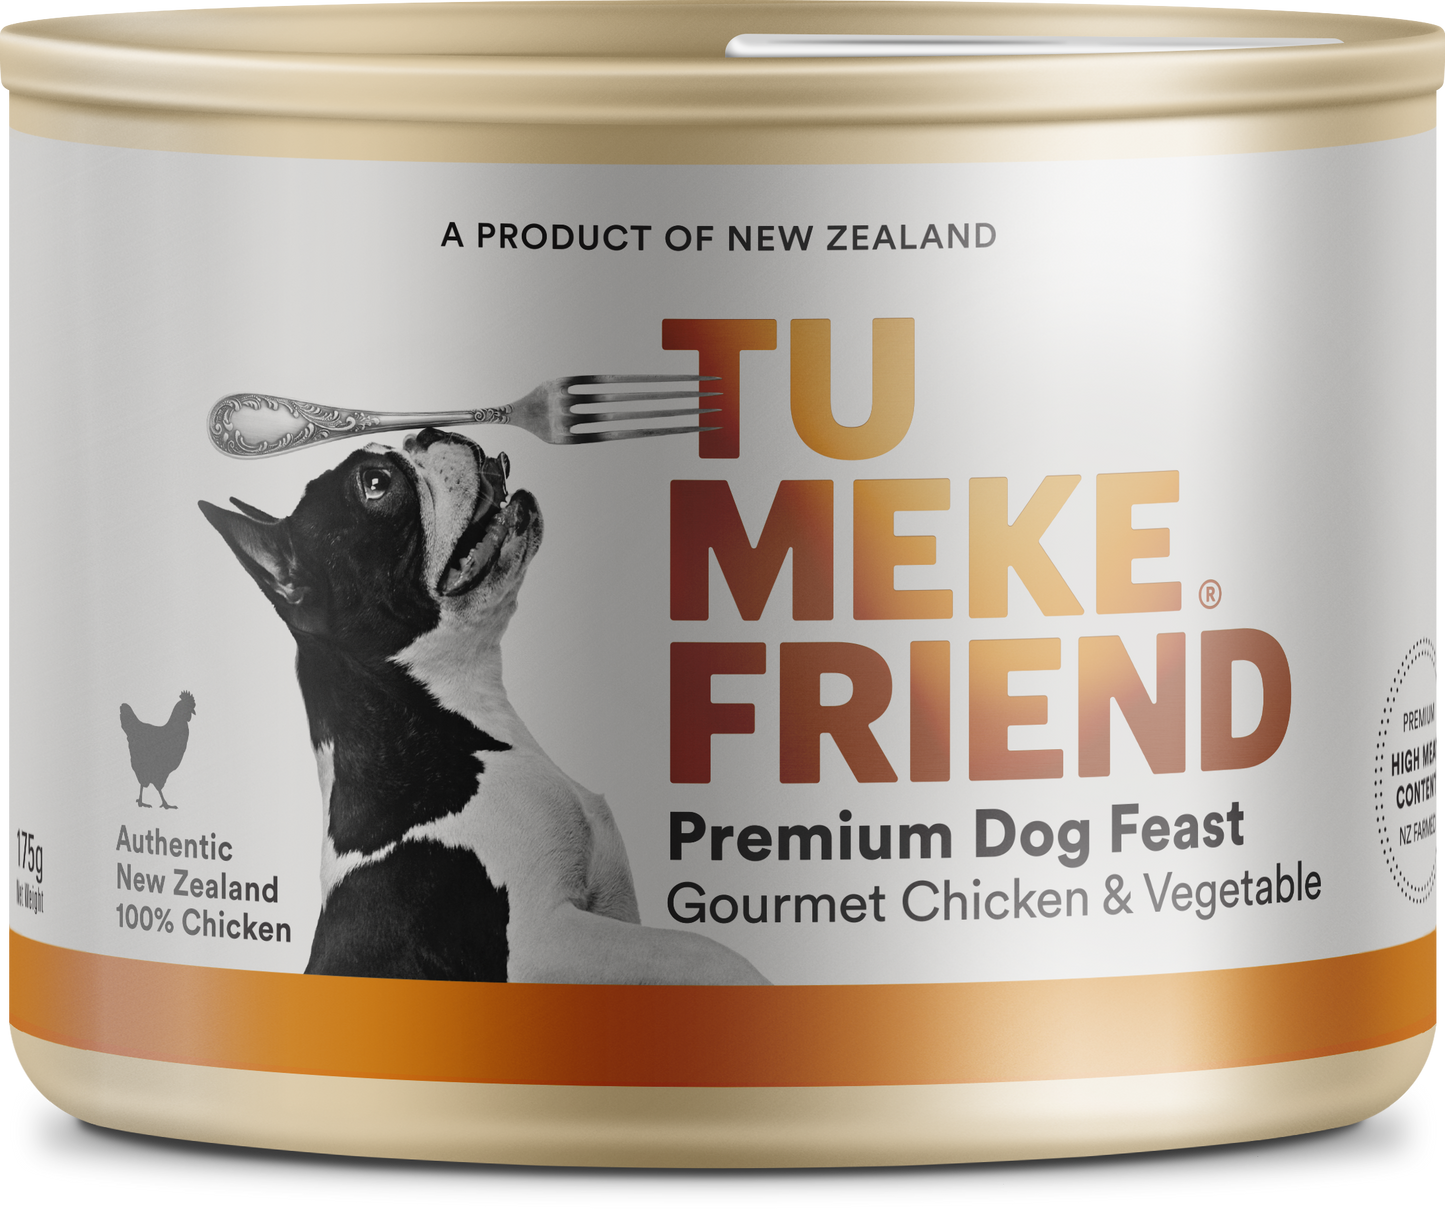 Tu Meke Friend Premium Dog Feast Gourmet Chicken & Vegetable